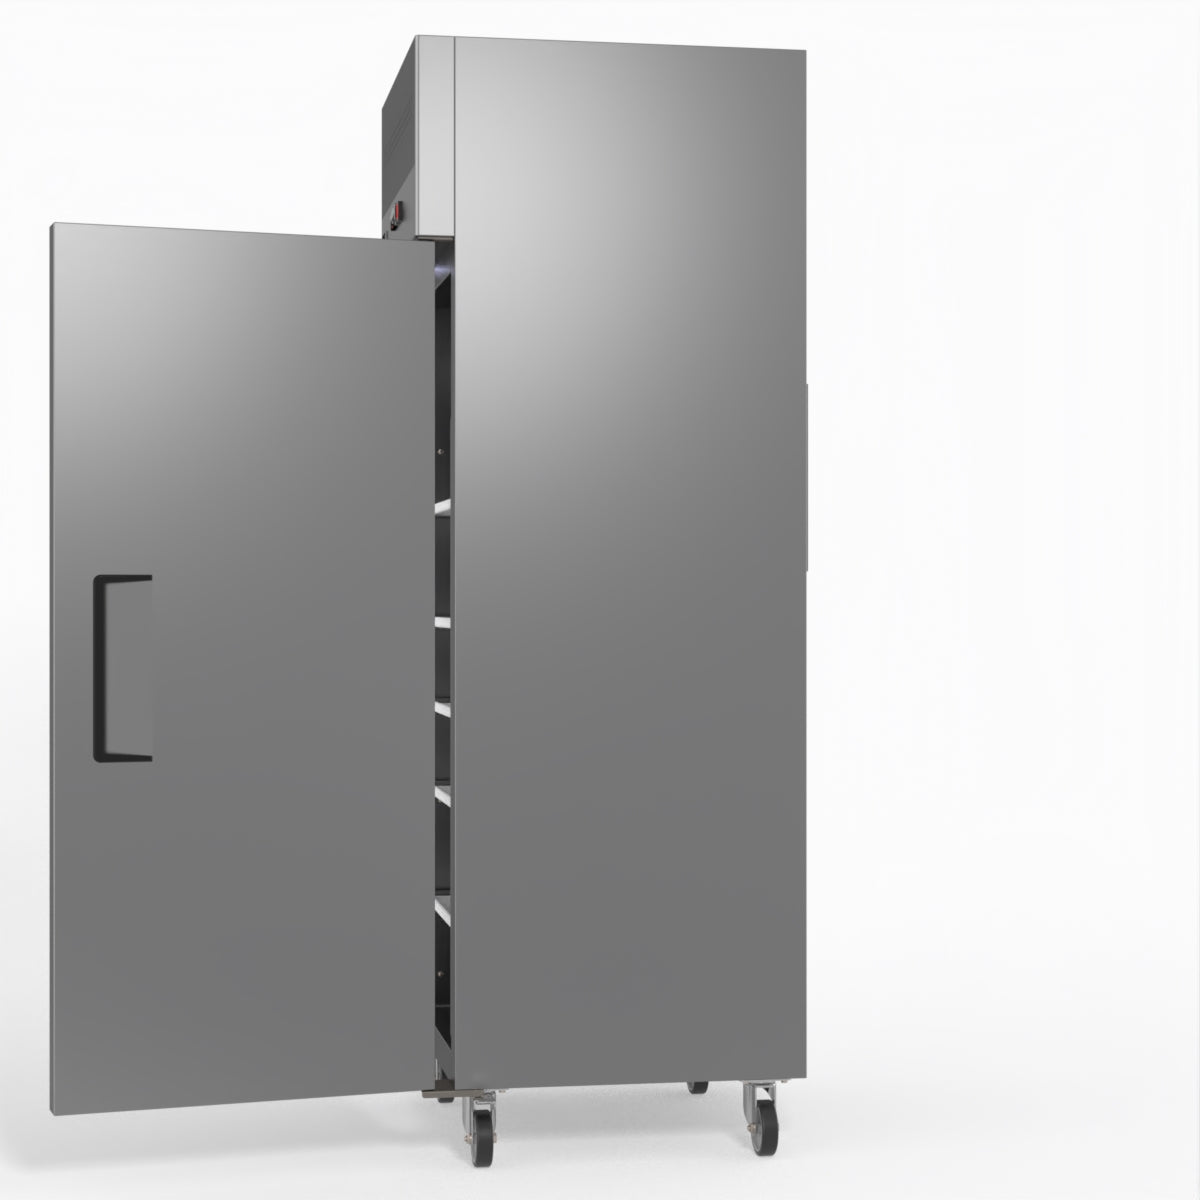 429 Litre Upright Single Door Stainless Steel Door Freezer